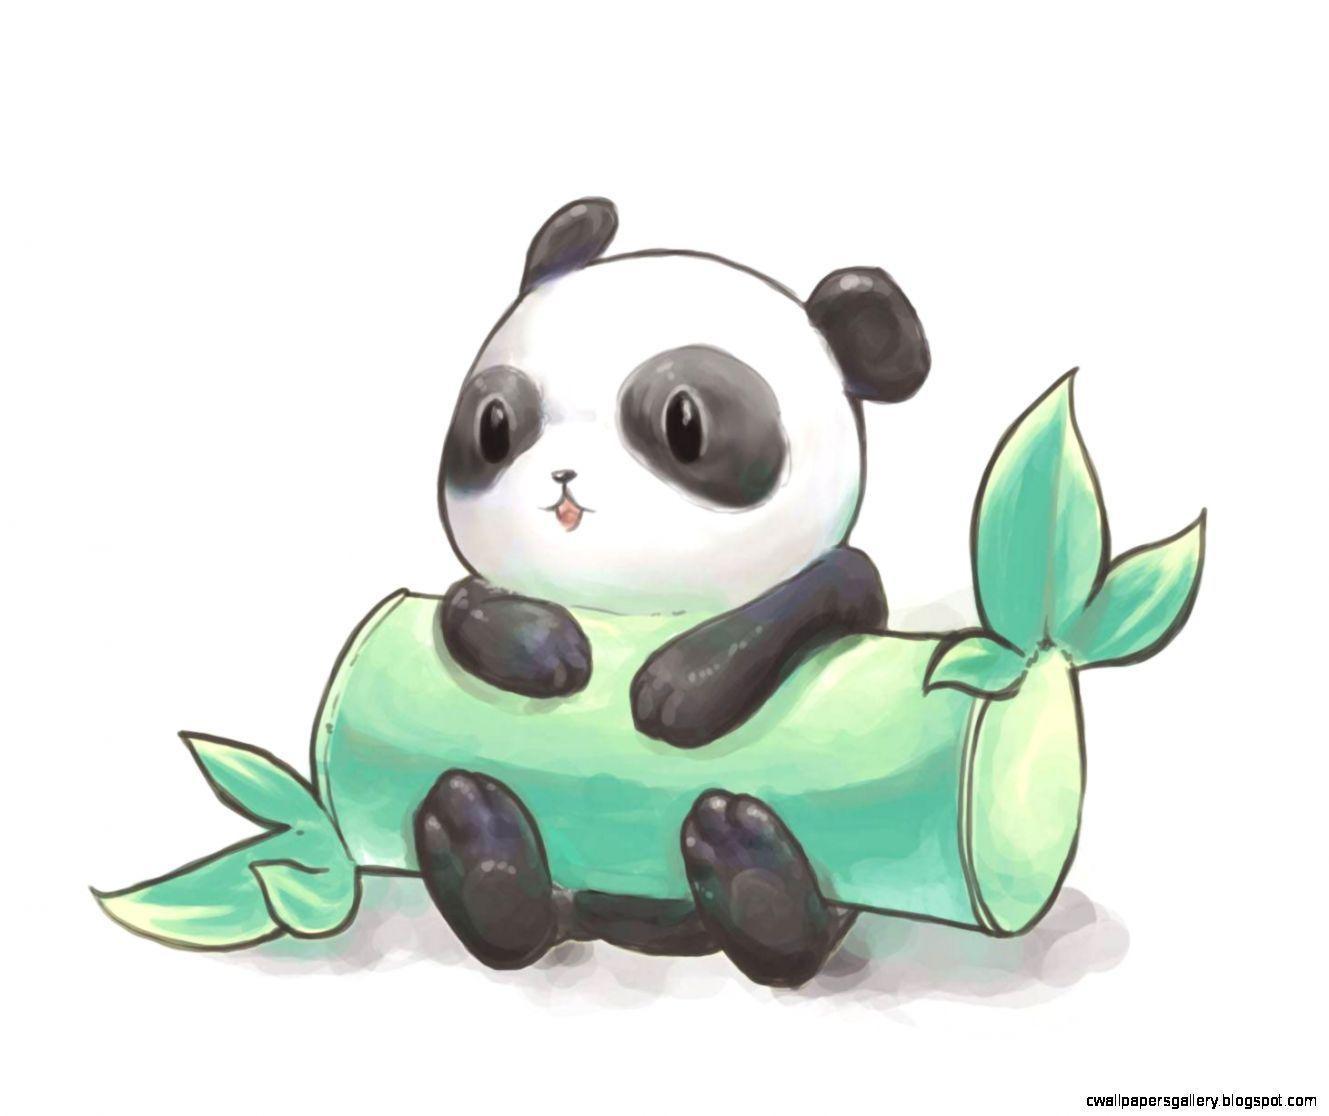 Cute Panda Drawing Wallpaper